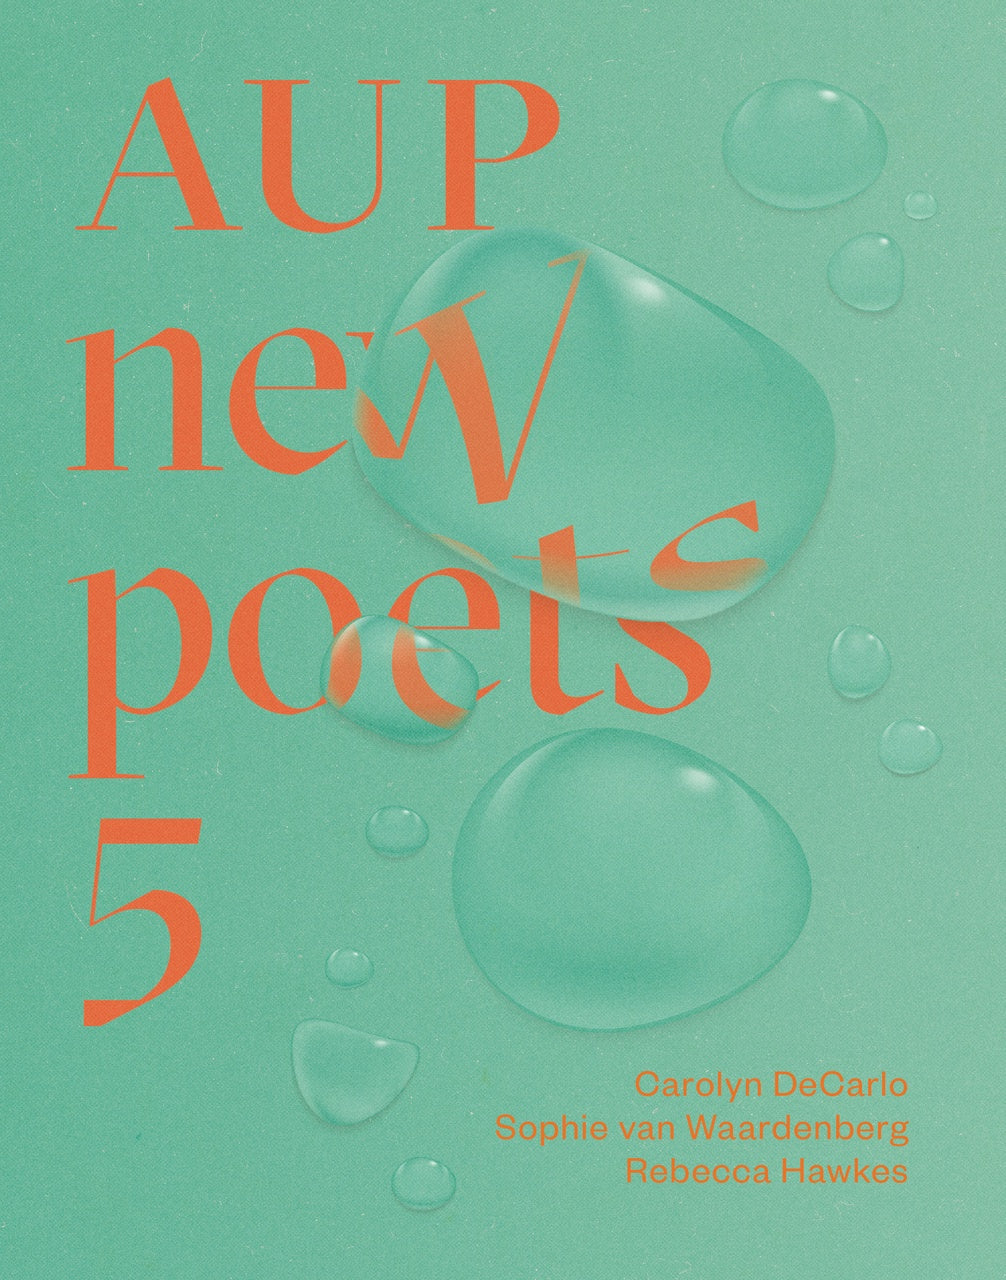 AUP New Poets 5 - Strange Goods